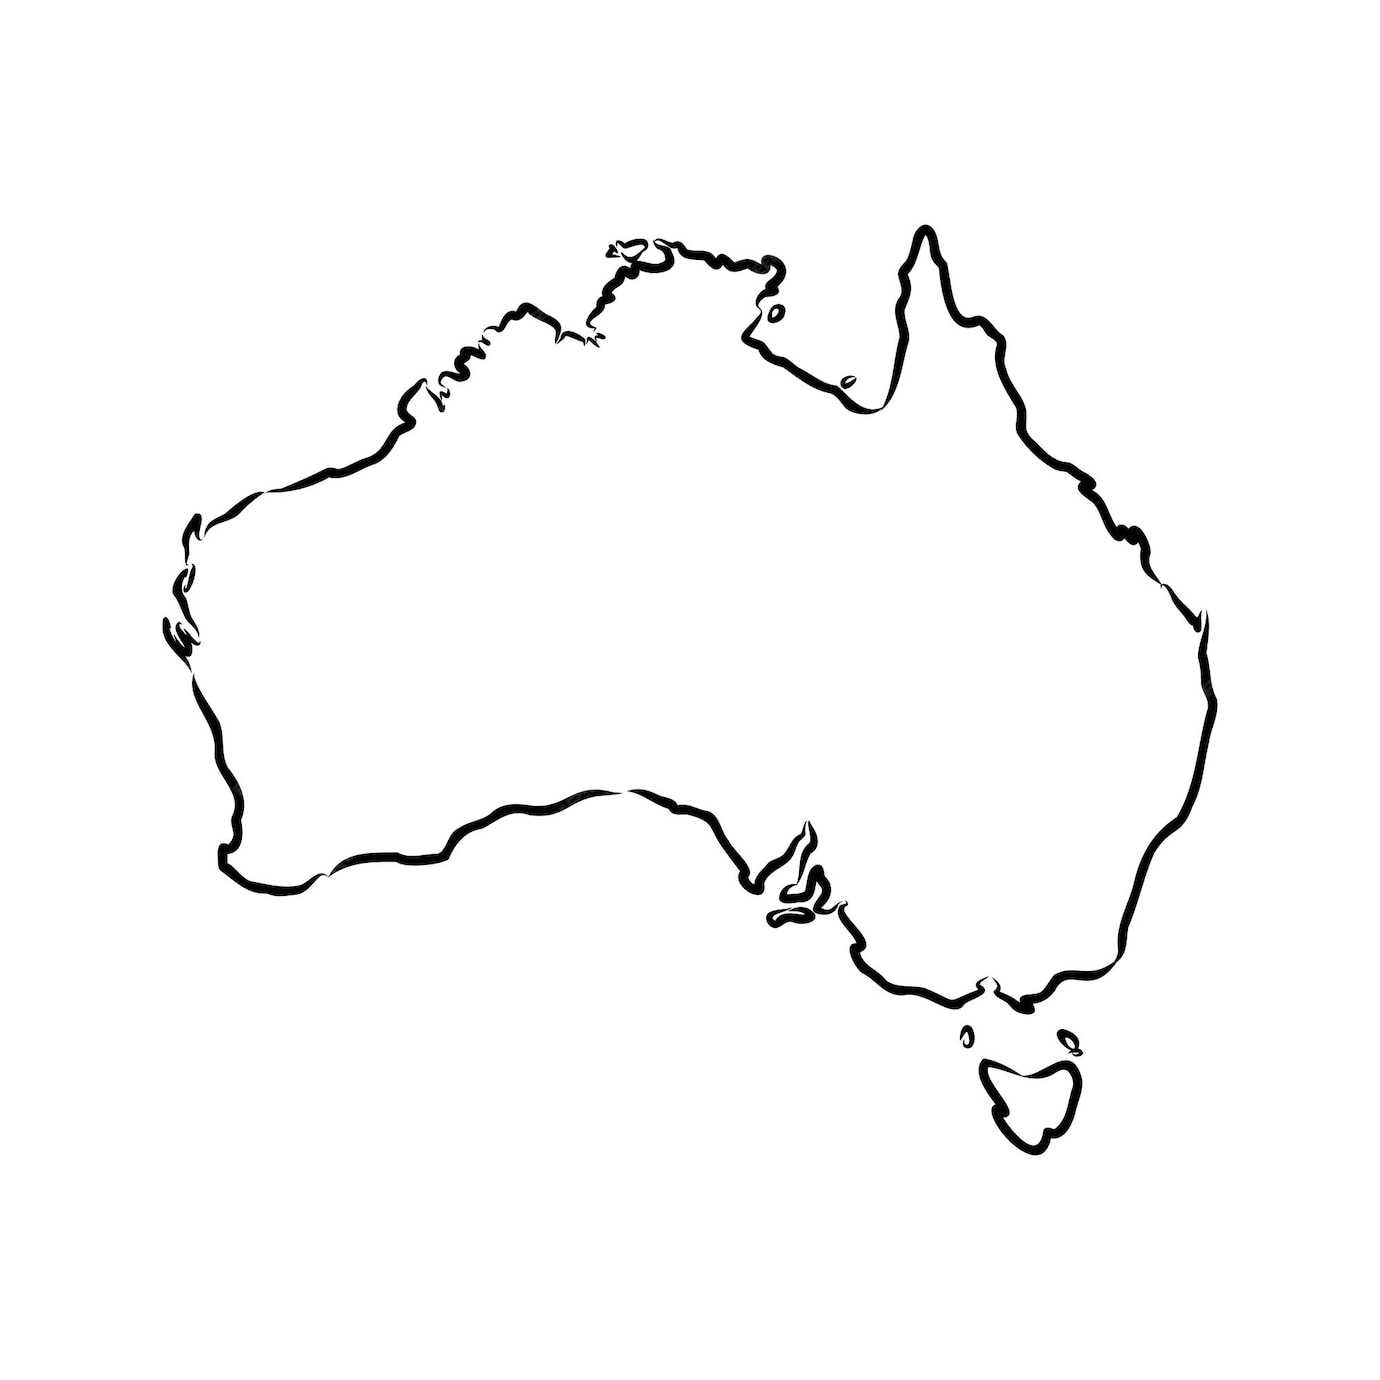 Esboço De Mapa De Austrália à Mão Livre Em Fundo Branco Ilustração Vetorial Desenho Vetorial 3392